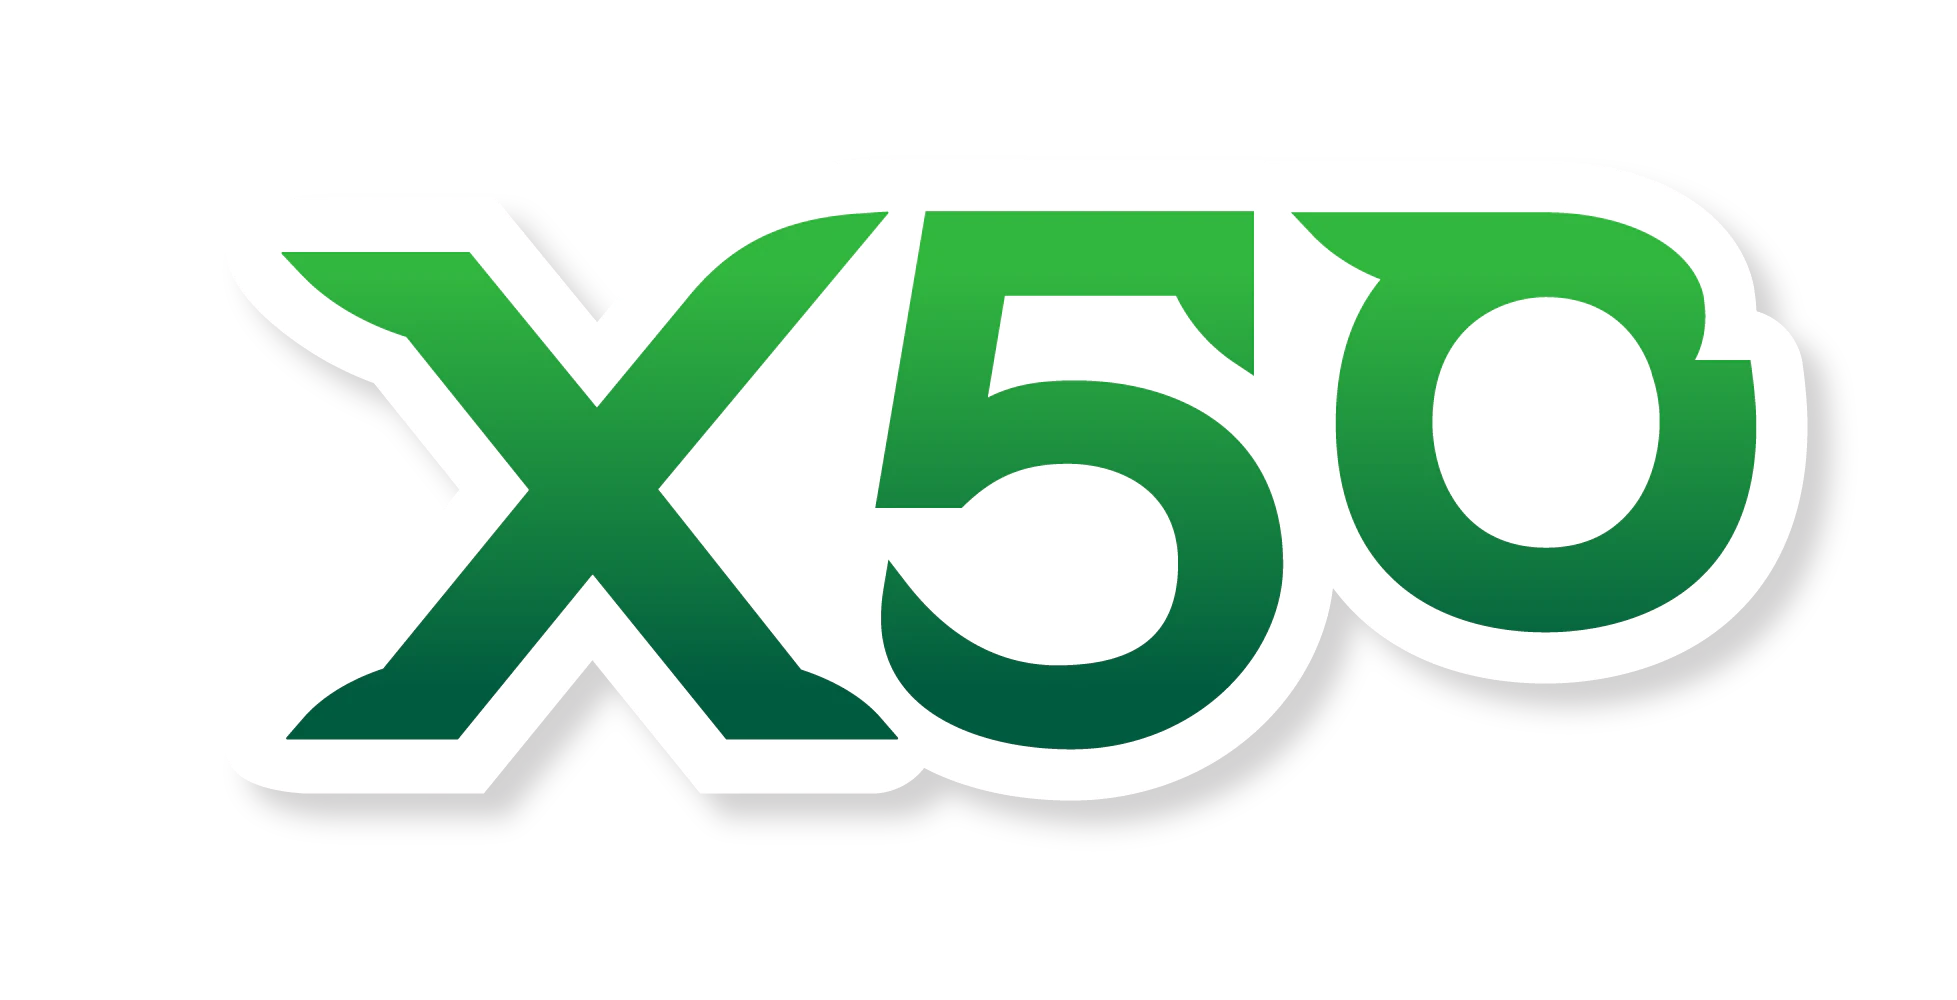 x50